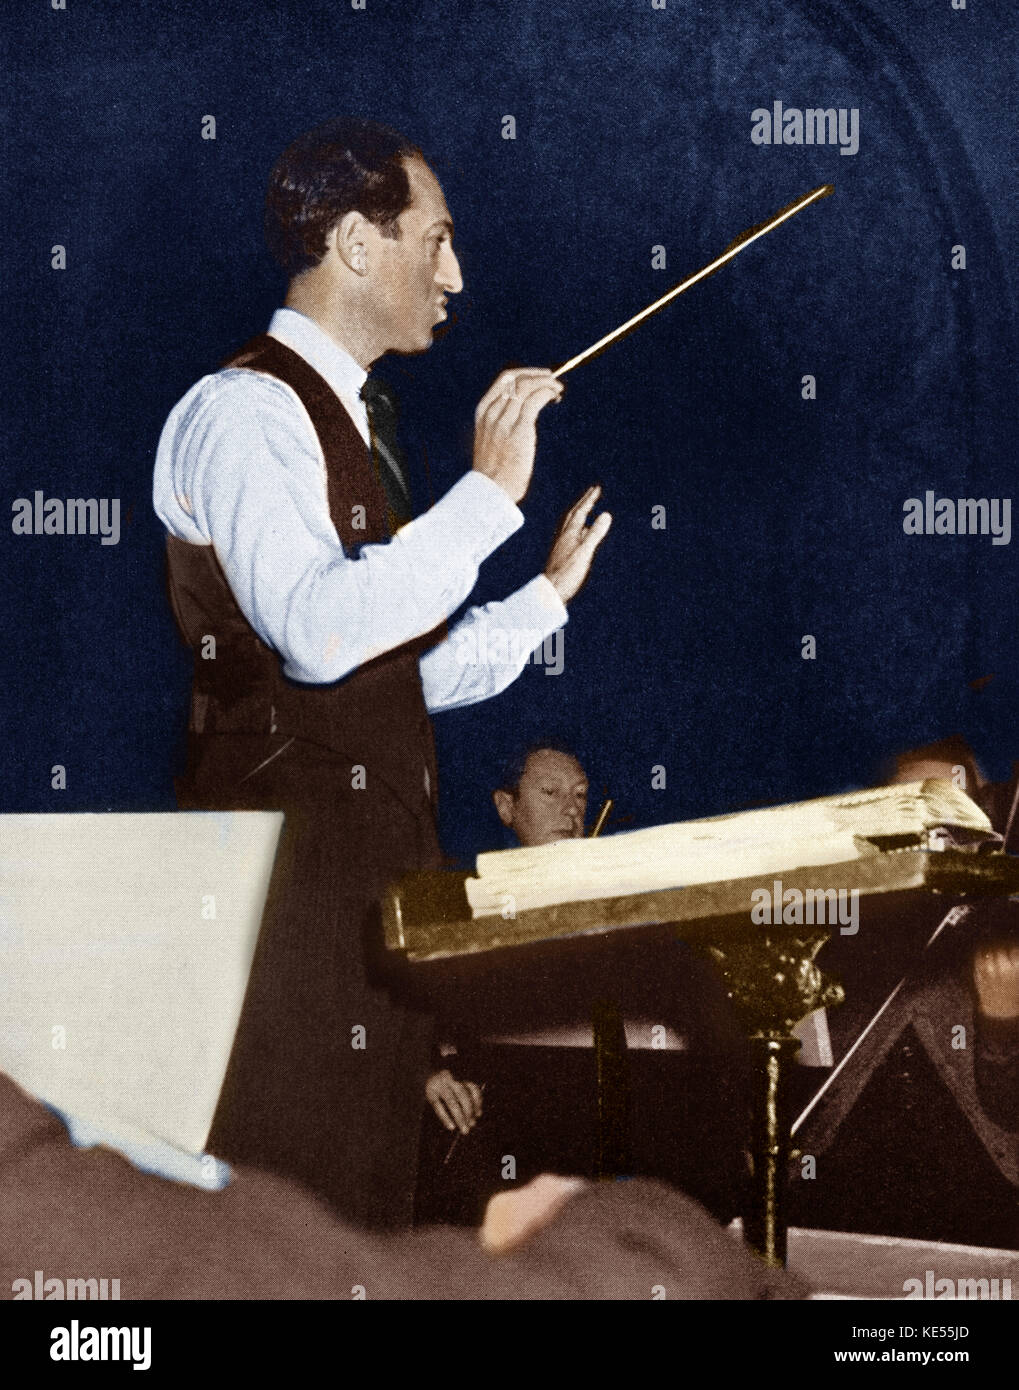 La conduite de George Gershwin avec l'orchestre de répétition . Compositeur et pianiste, 26 septembre 1898 - 11 juillet 1937. Version colorisée. Banque D'Images